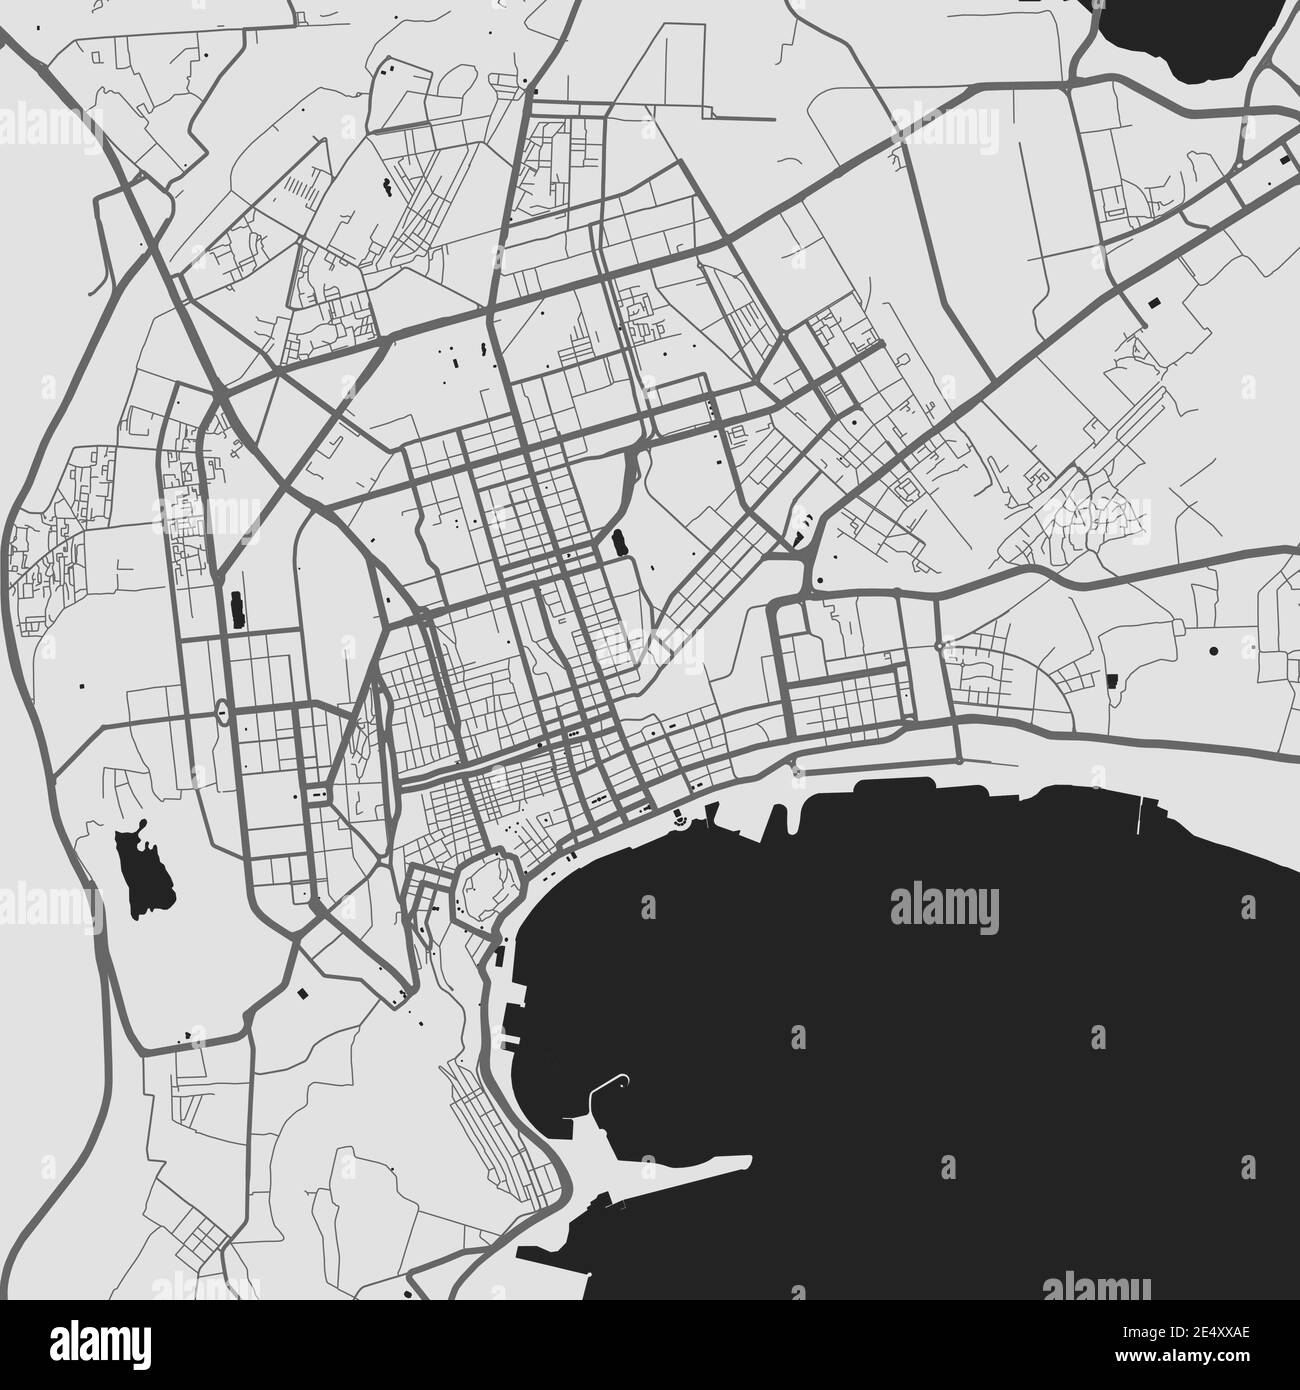 Stadtkarte von Baku. Vektorgrafik, Baku Karte Graustufen Kunstposter. Straßenkarte mit Straßen, Ansicht der Metropolregion. Stock Vektor